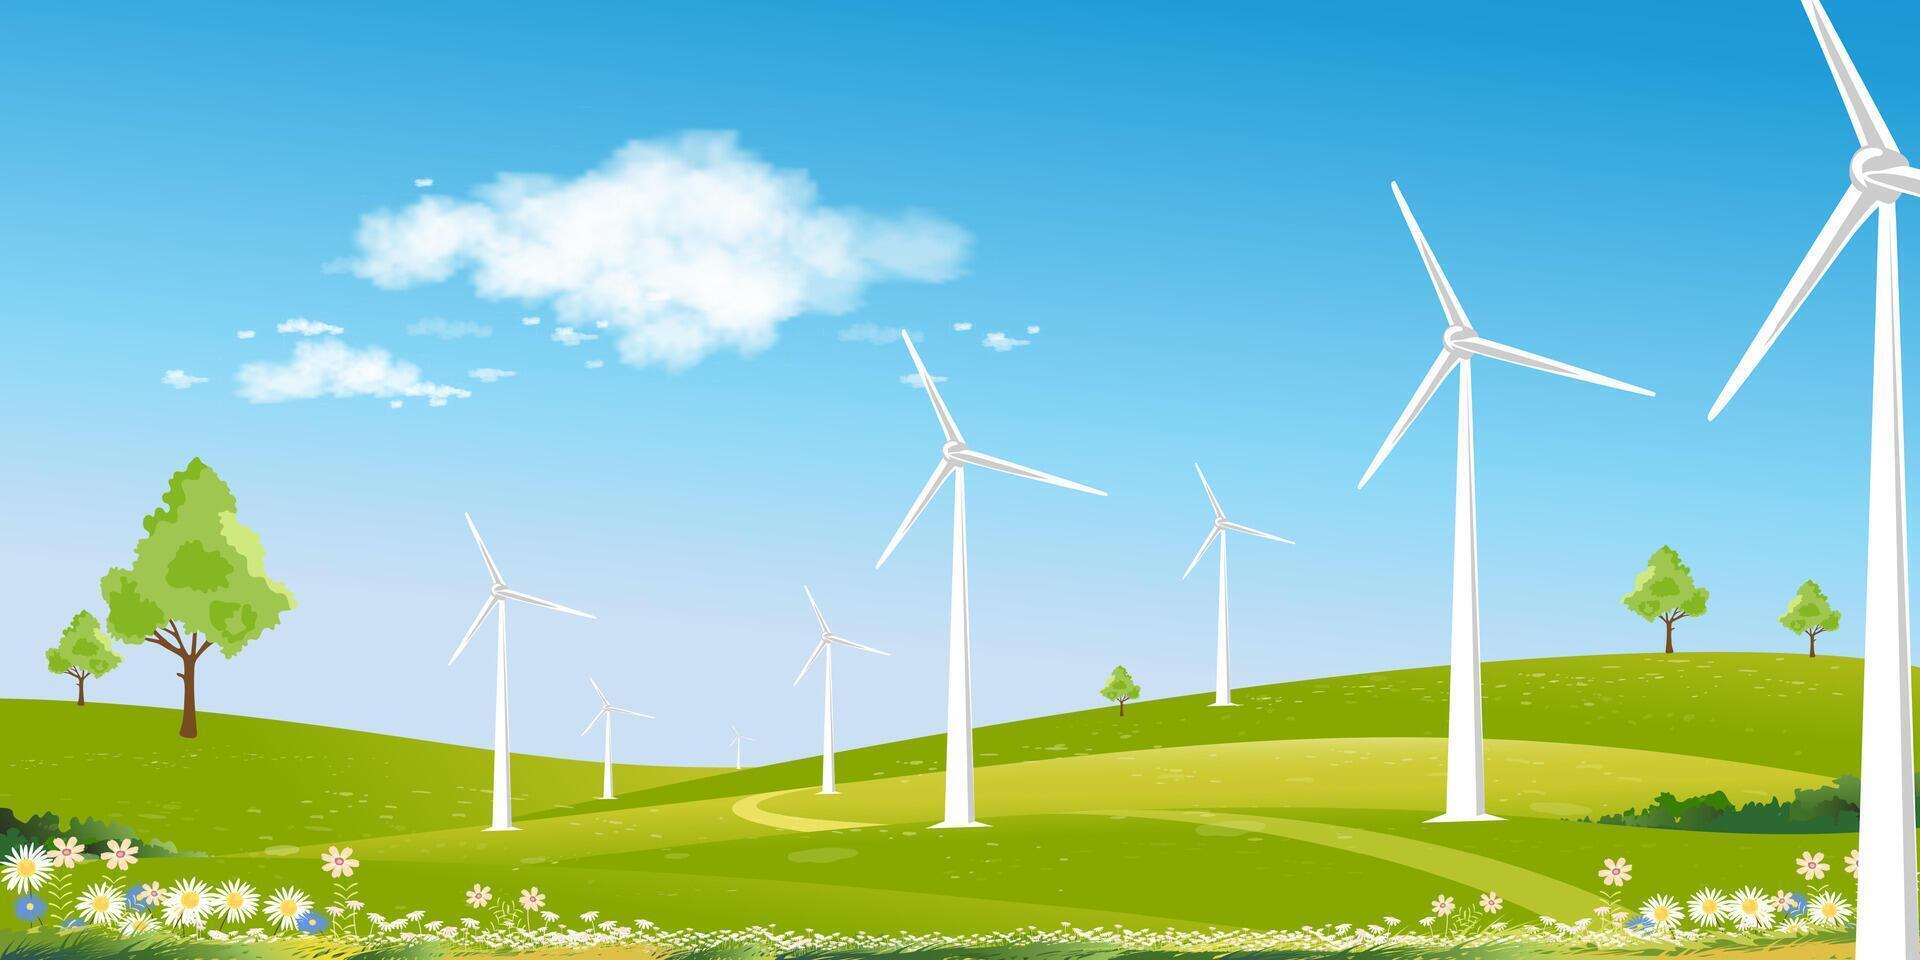 miljö- bakgrund, vår landskap grön fält med väderkvarn på berg, blå himmel, moln, vektor lantlig med sol- panel vind turbiner installerad som förnybar station energi källor för elektricitet